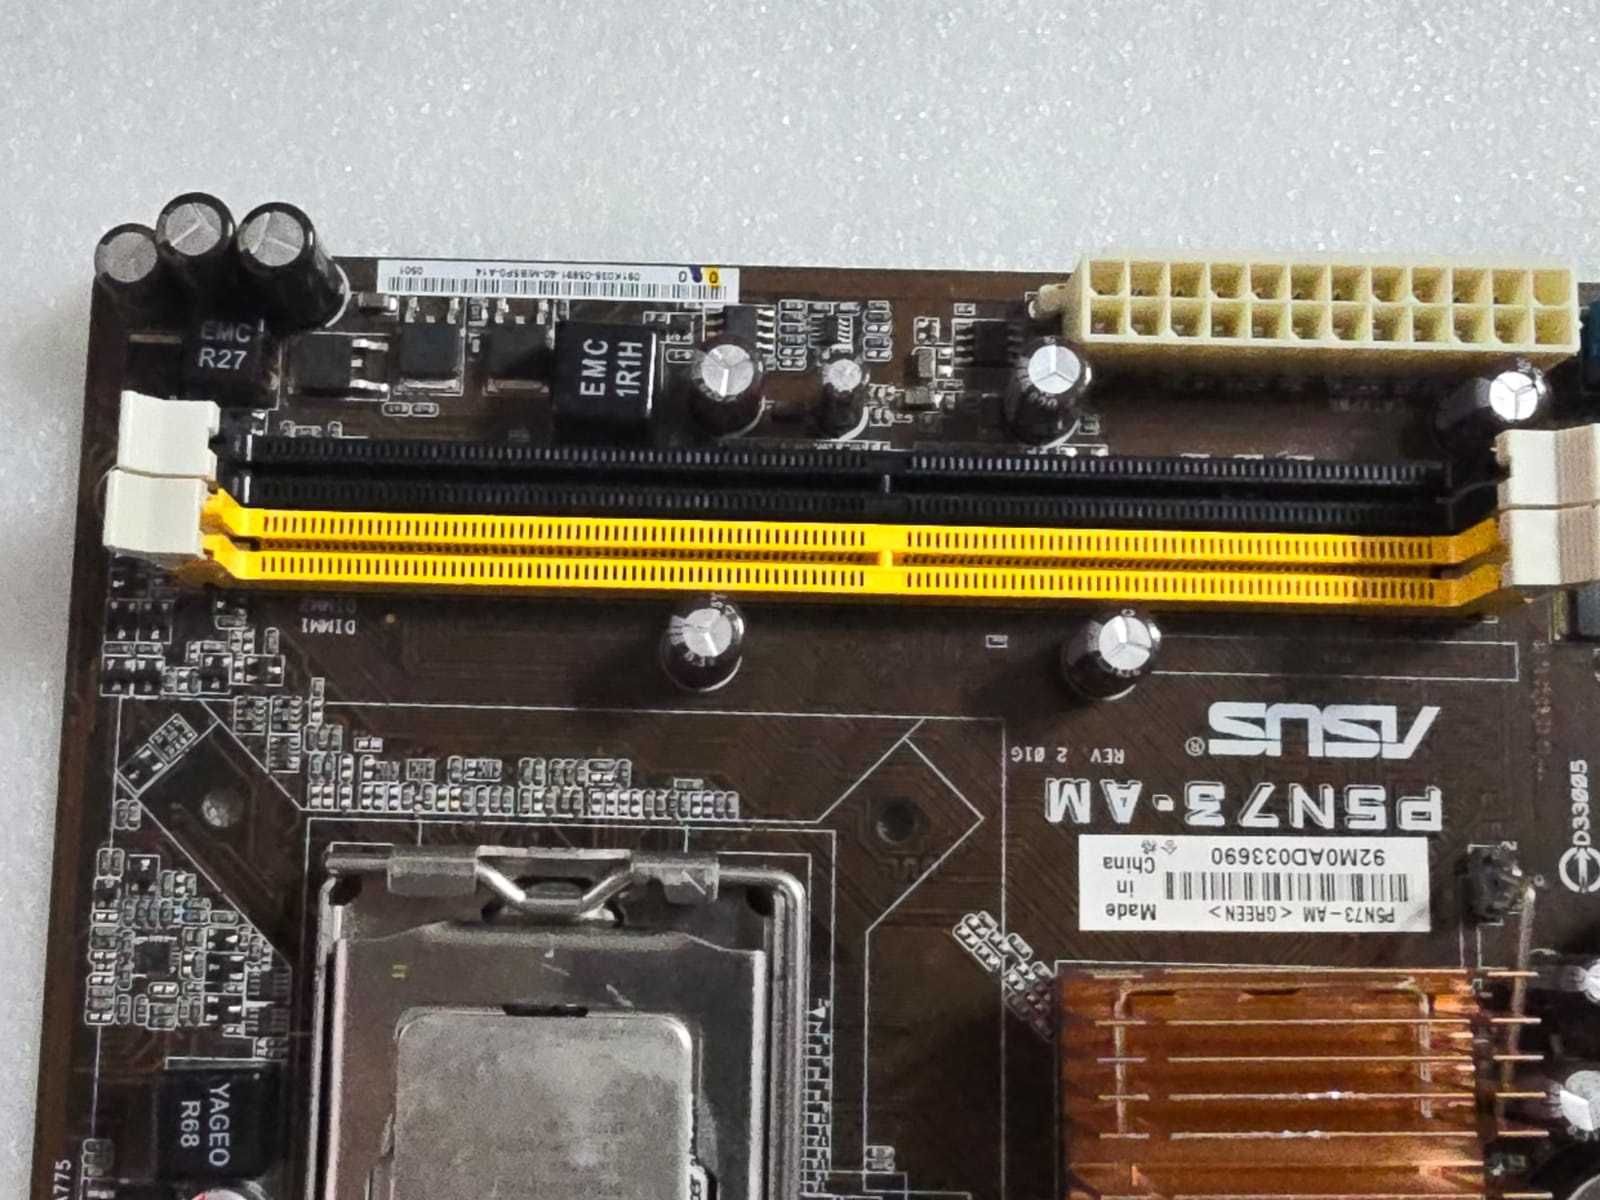 Placa de baza ASUS P5N73-AM, LGA775, DDR2 + Procesor Q8200